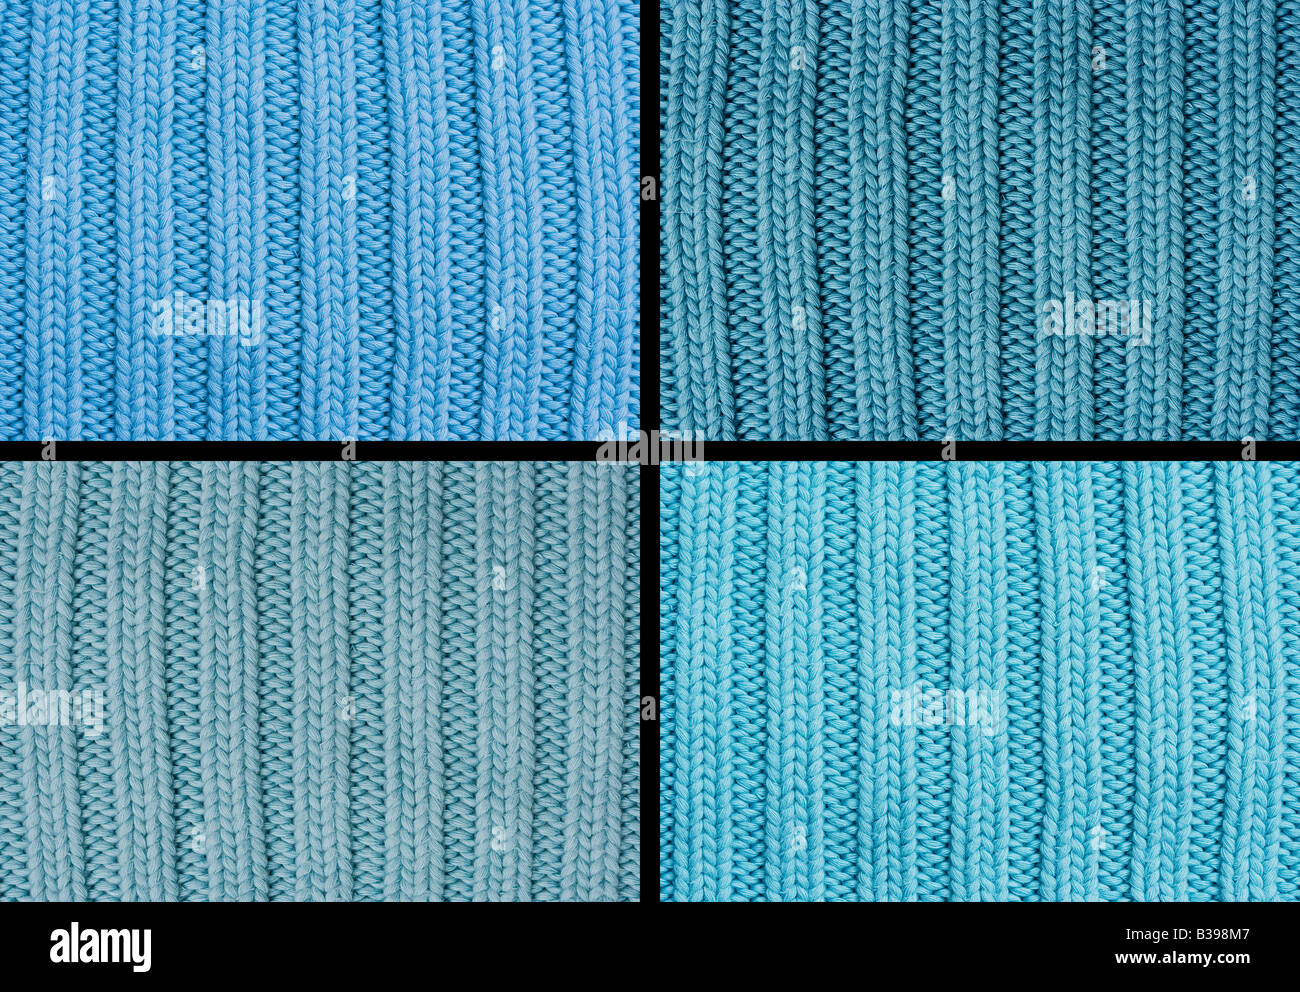 Verfassen von vier Woll-Muster - Muster mit Garnhaspel und Strick stricken Stockfoto